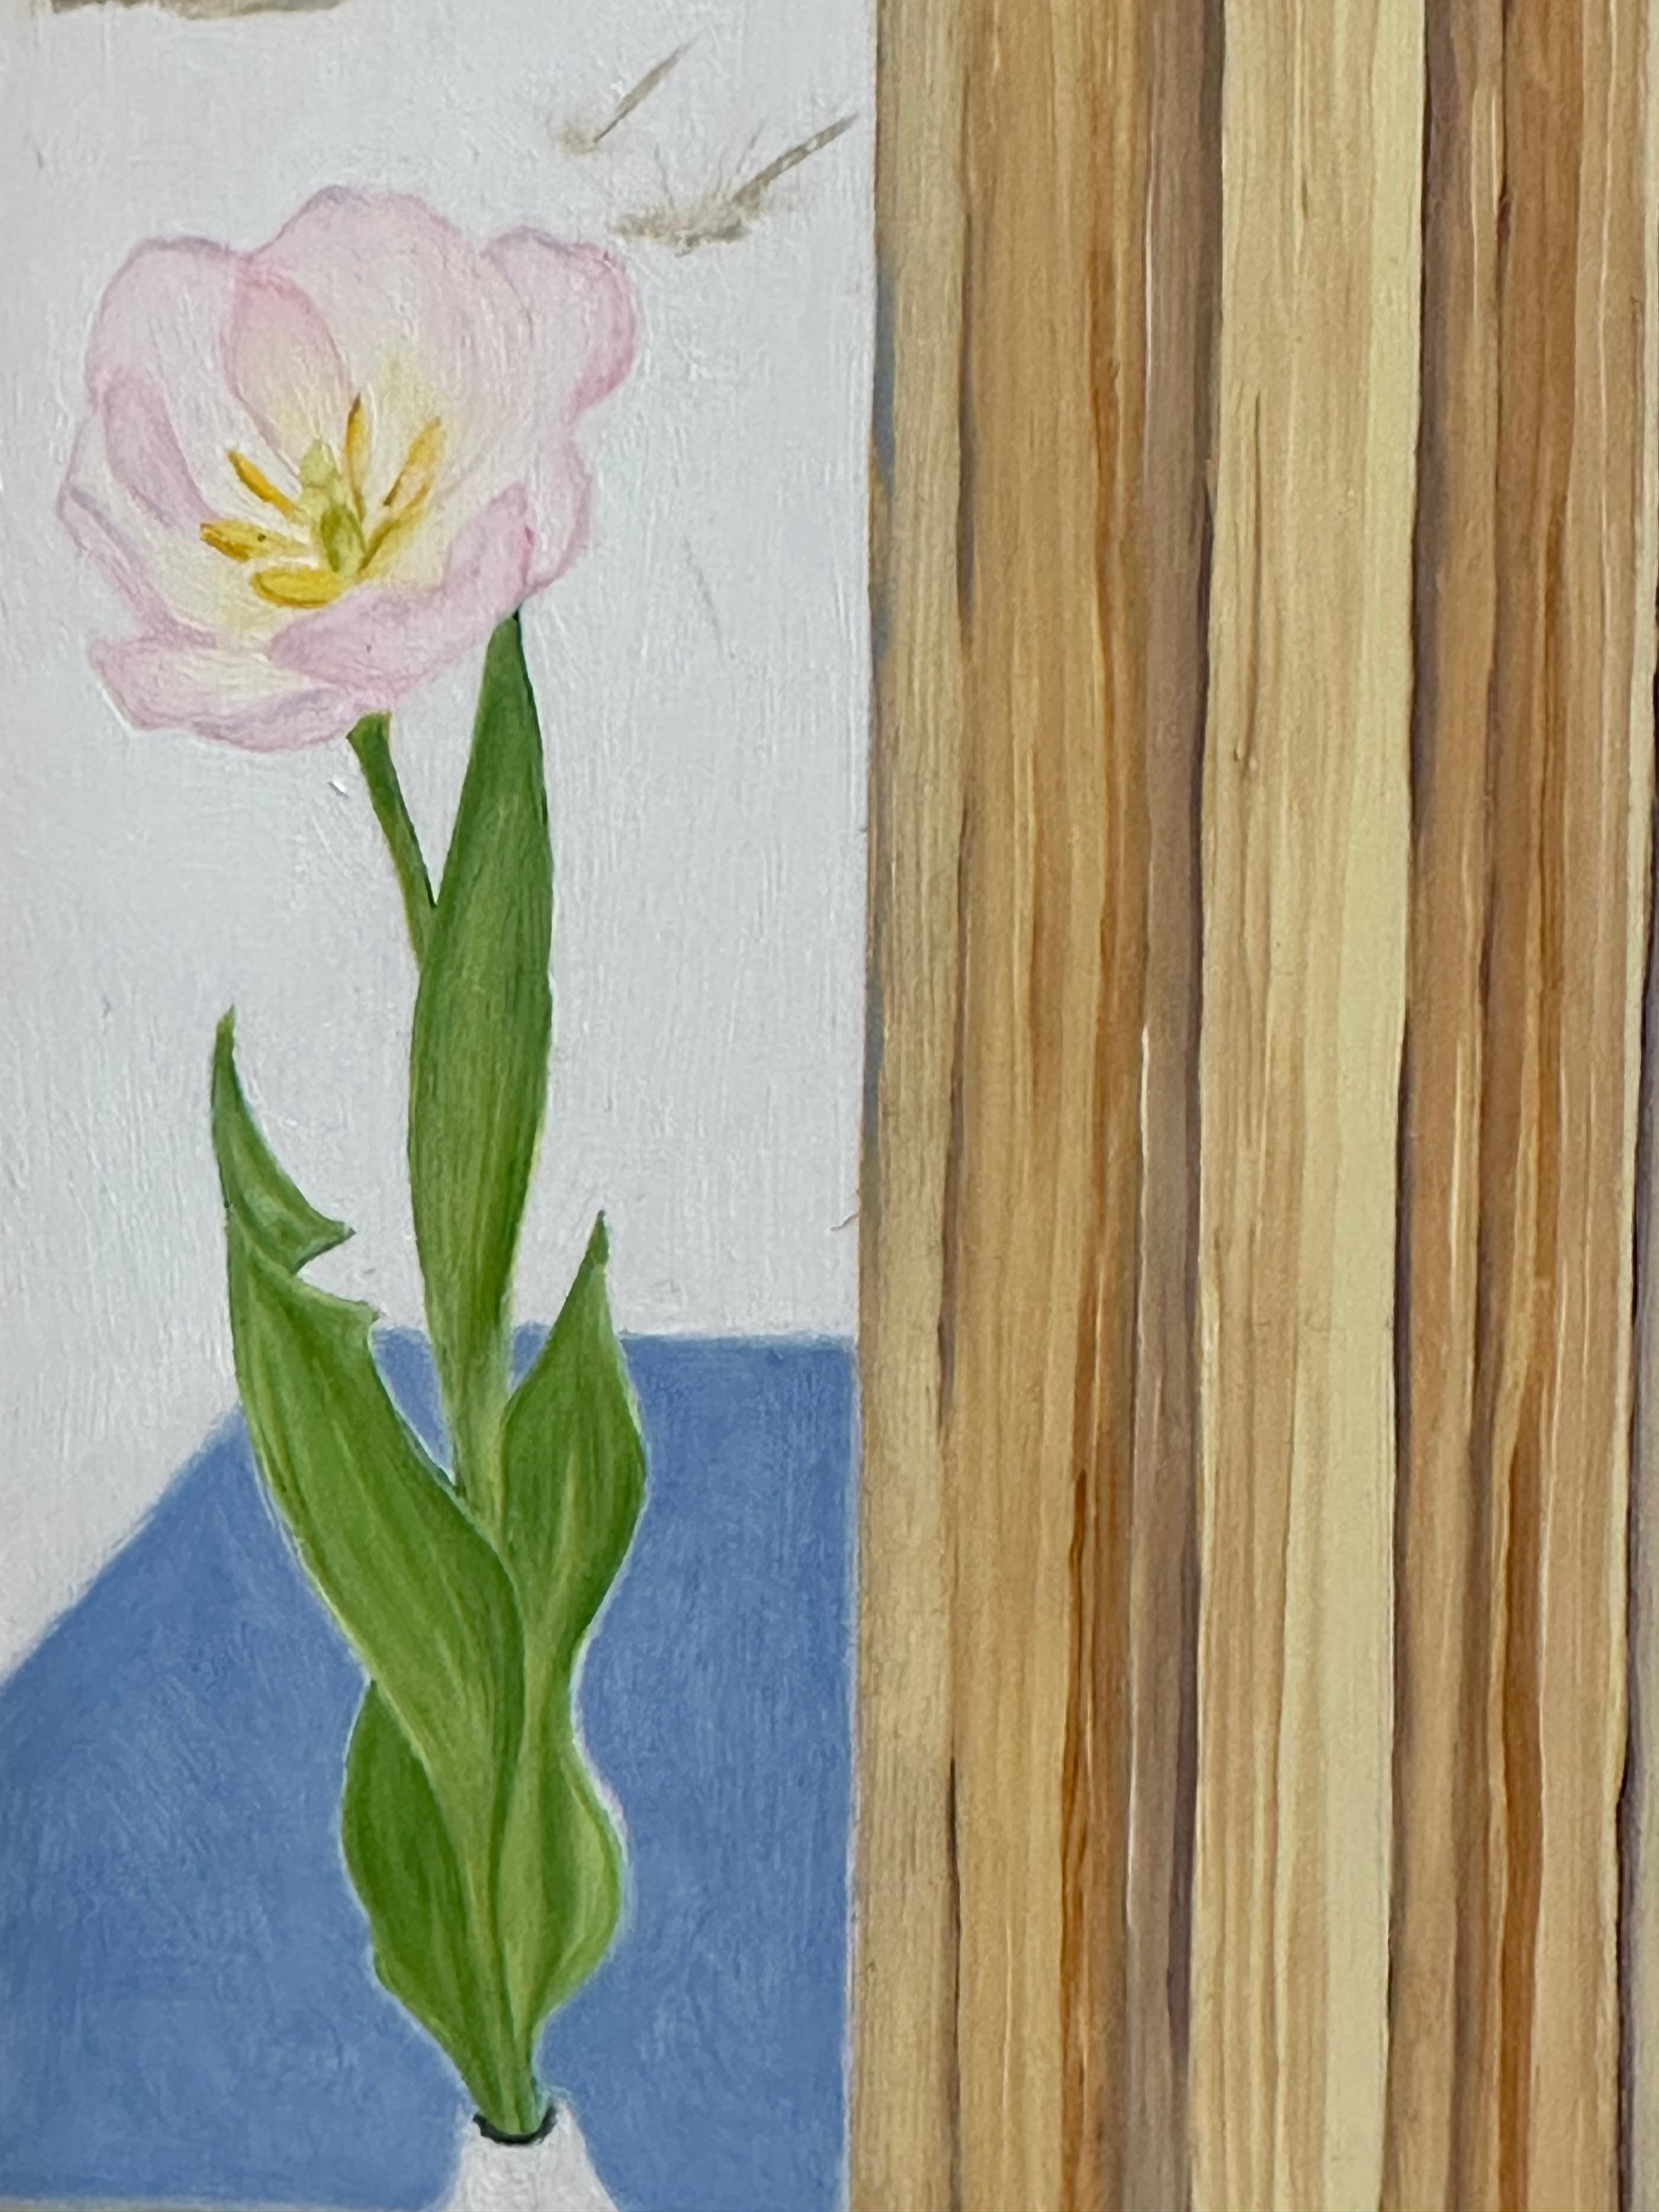 Auf einer hölzernen Fensterbank stehen weiße Tulpen in einem hellen Rosa, während draußen durch die Fensterscheiben eine Winterlandschaft mit einem schneebedeckten Feld und kahlen Bäumen vor blauem Himmel zu sehen ist. Verso signiert, datiert und